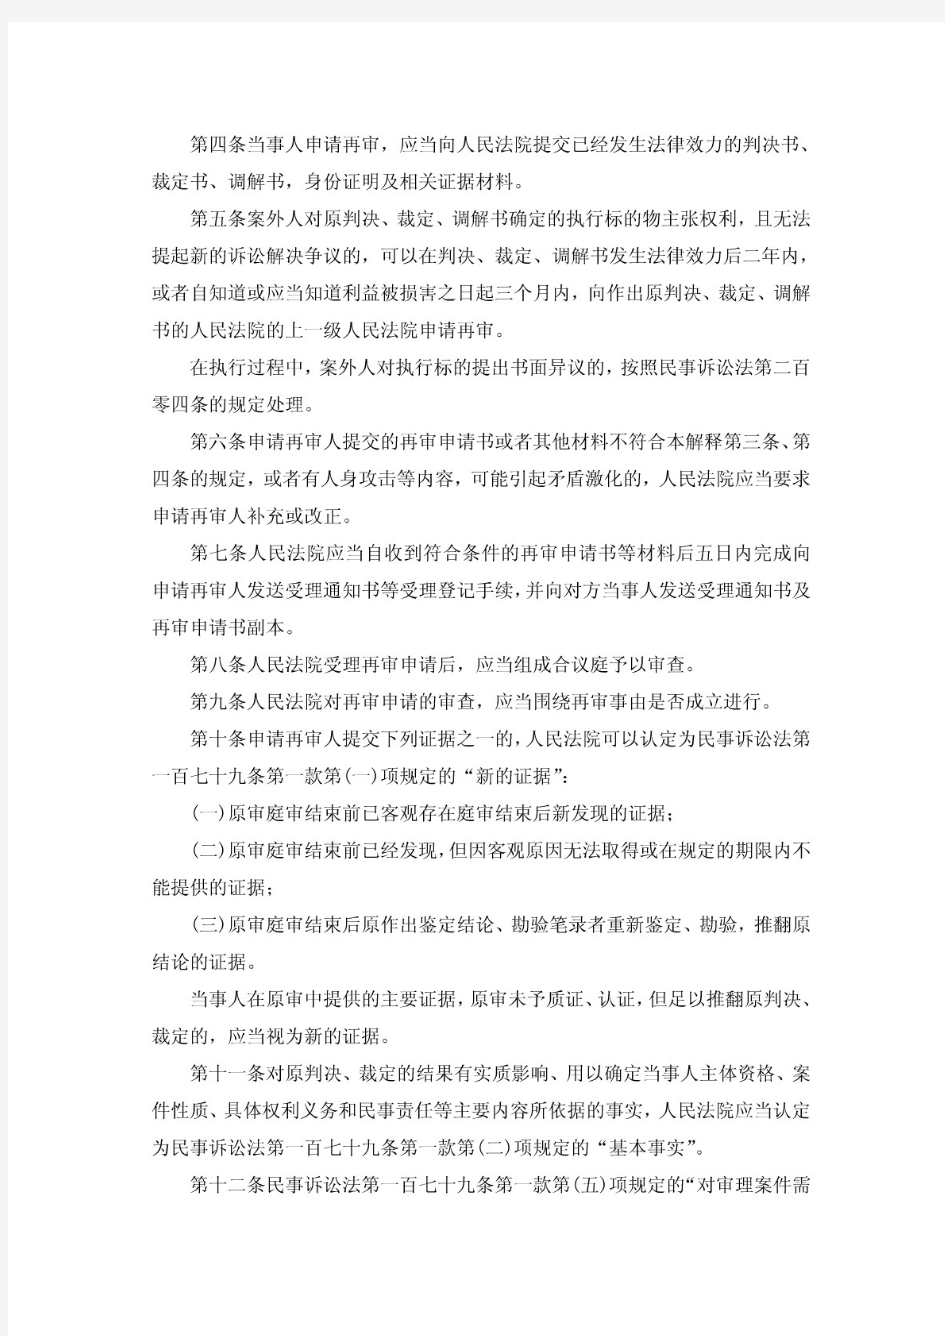 高法关于适用《中华人民共和国民事诉讼法》审判监督程序若干问题的解释(法释[2008]14号)